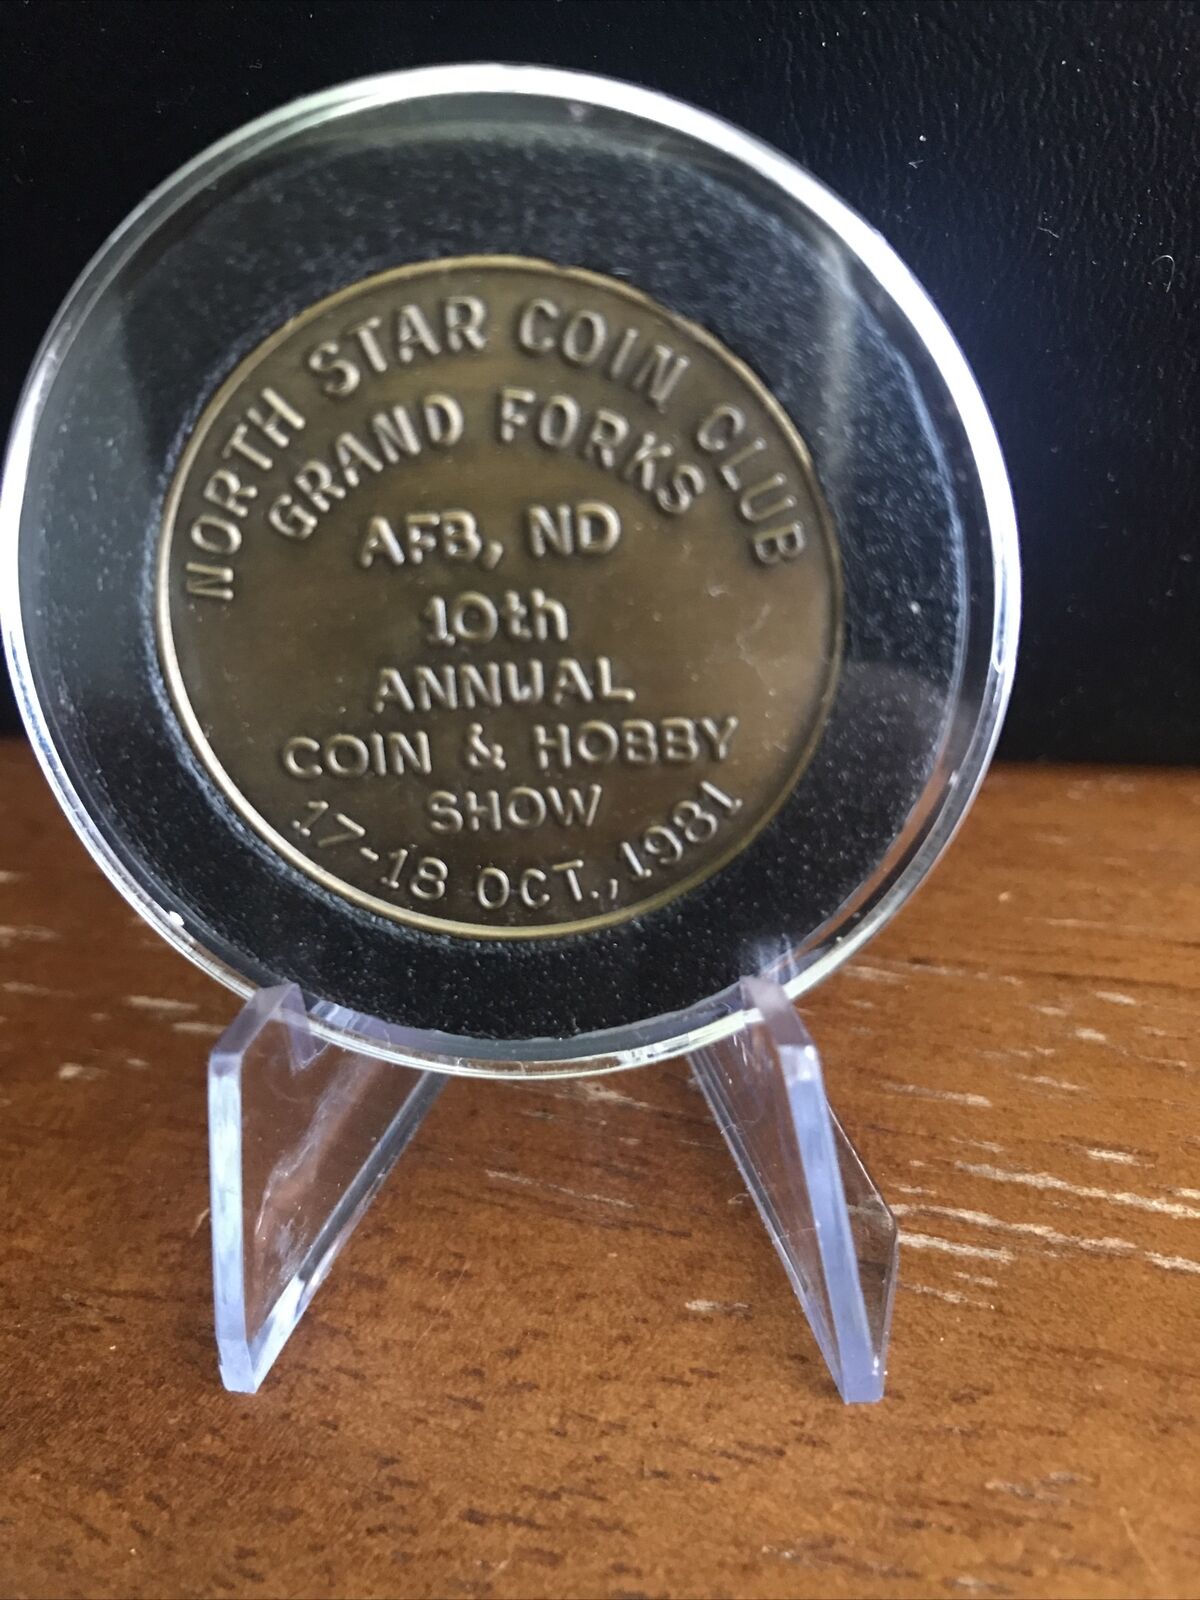 1981 North Star Coin Club, Grand Forks, N.D., 10th Annual Coin & Hobby Show Coin